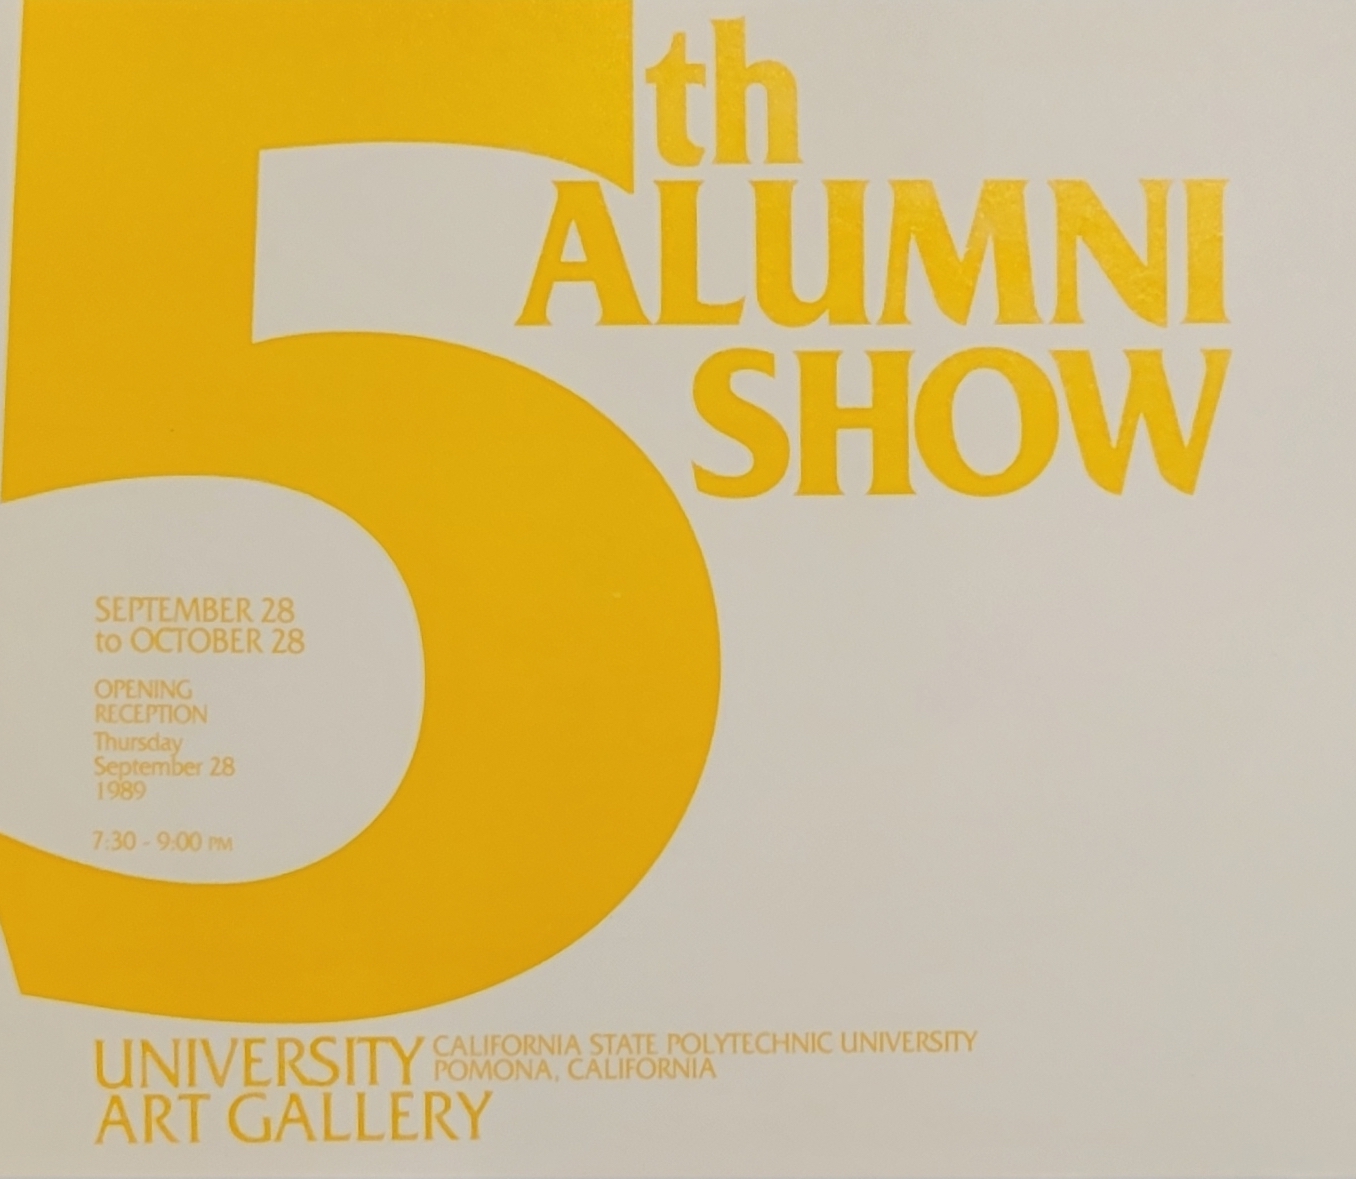 5th alumni show